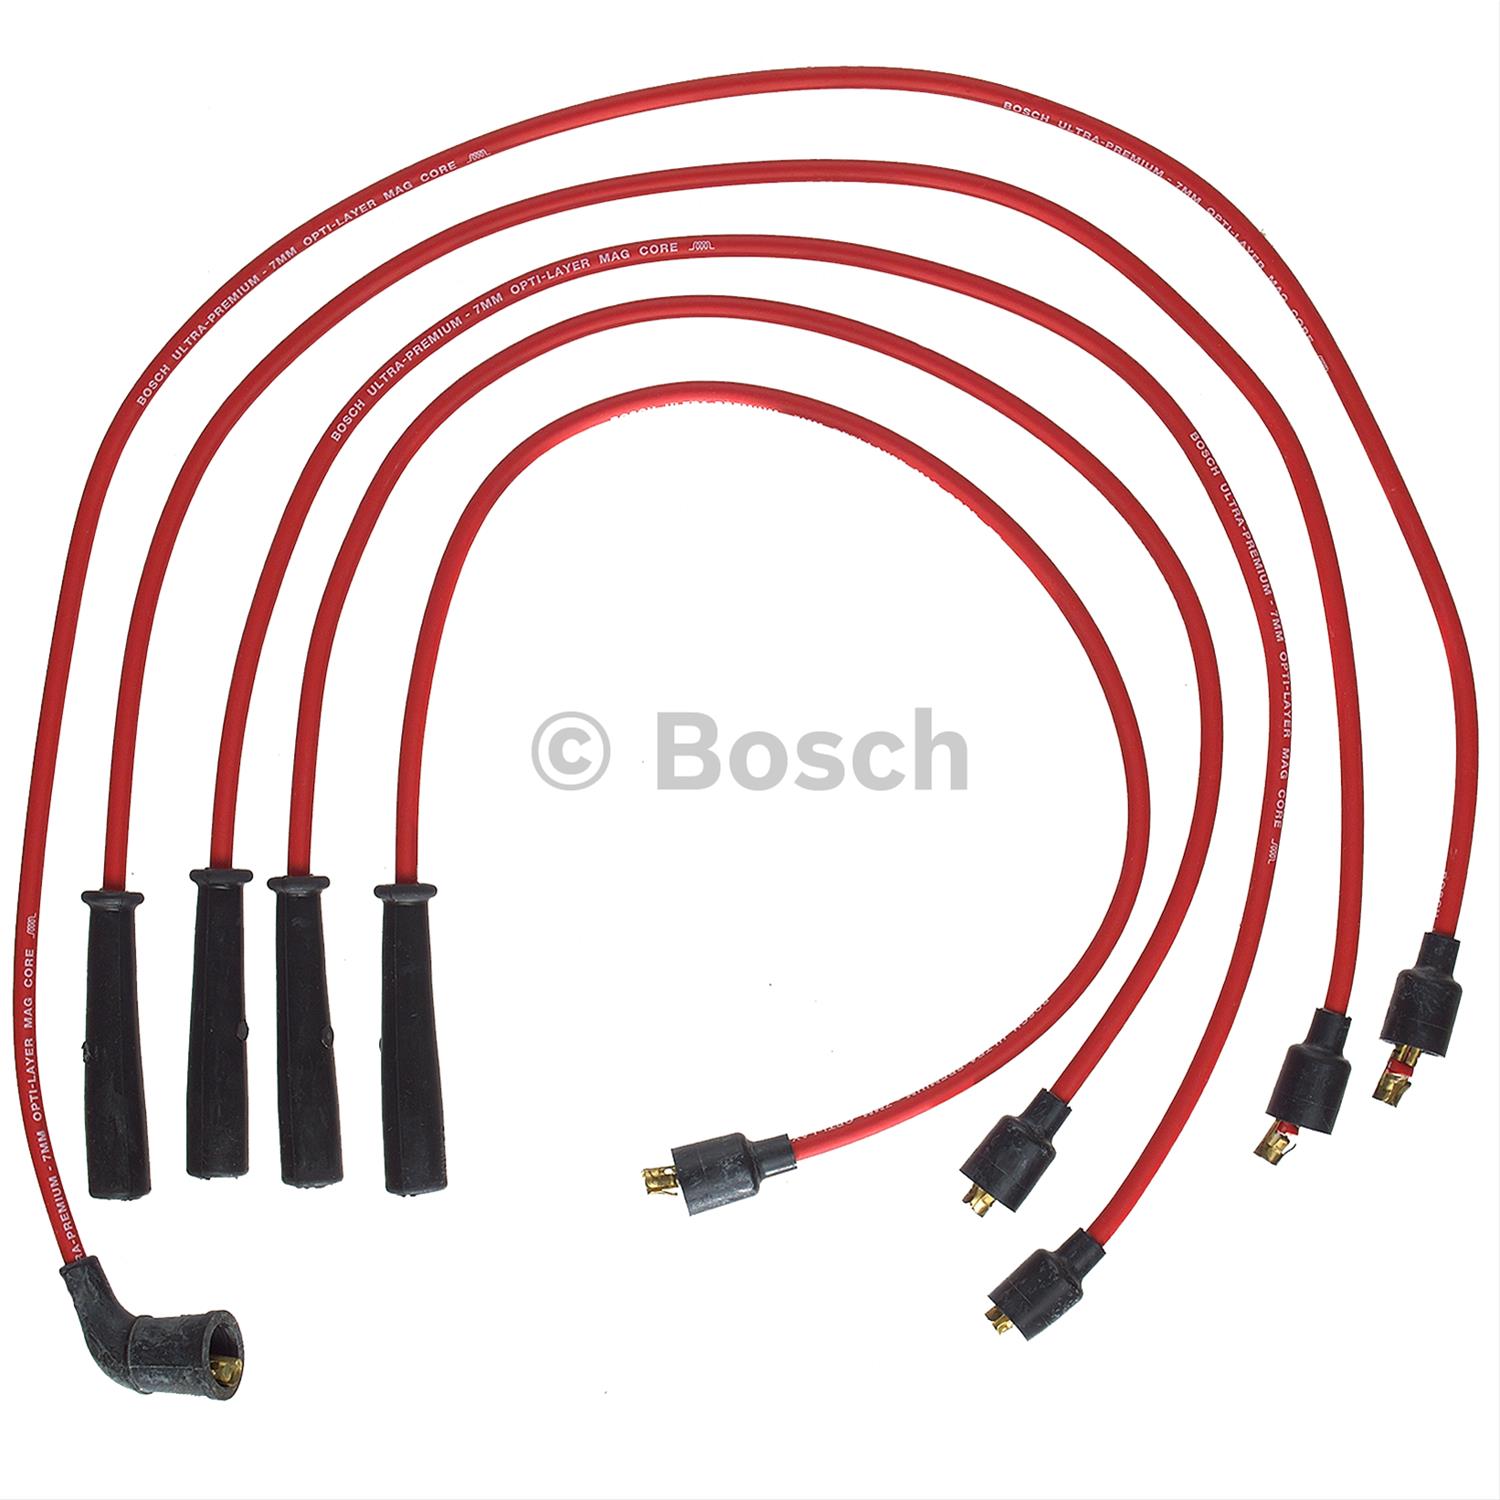 Bosch 09050 Premium Spark Plug Wire Set 